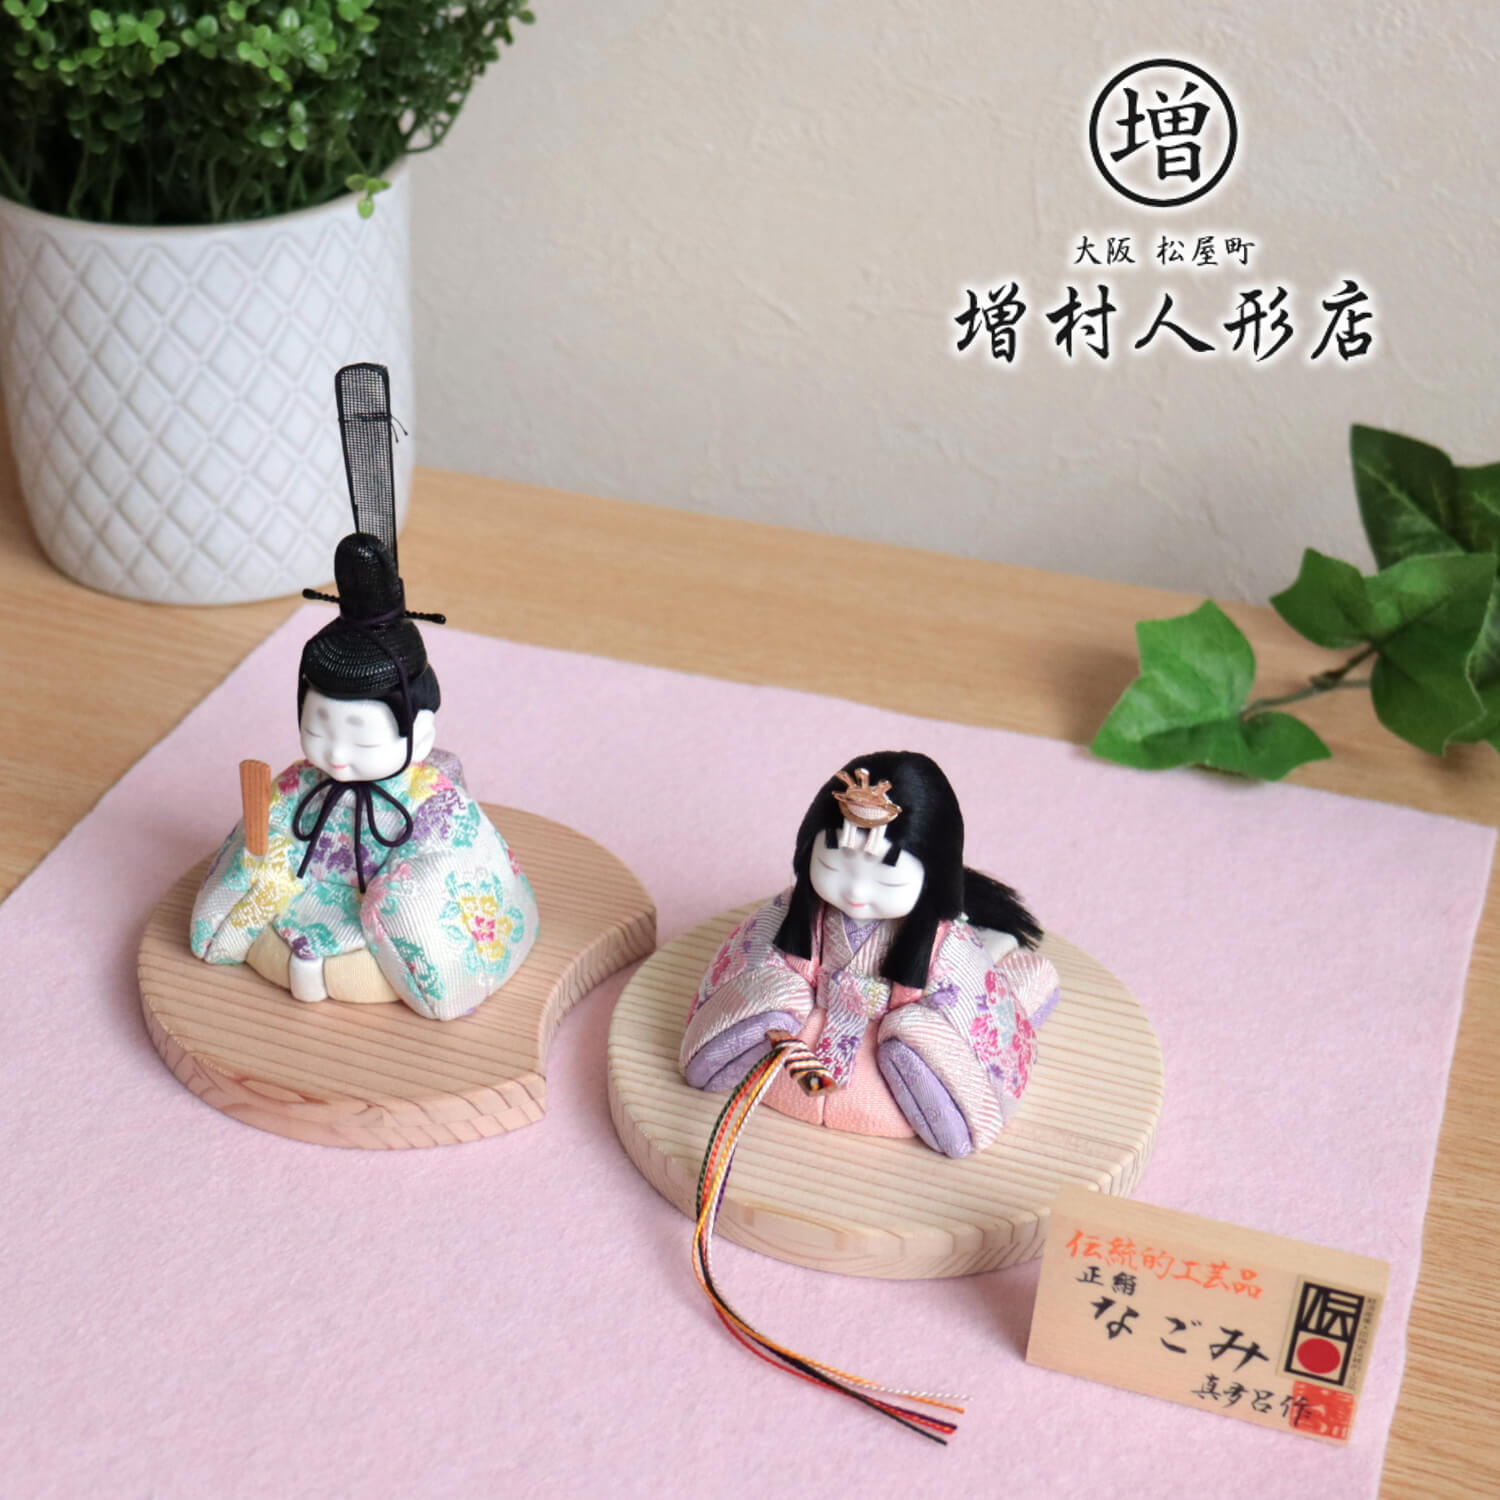 特価通販超リアル お幸さん人形 京懐石 みのきち 泰生作 美品 市松人形